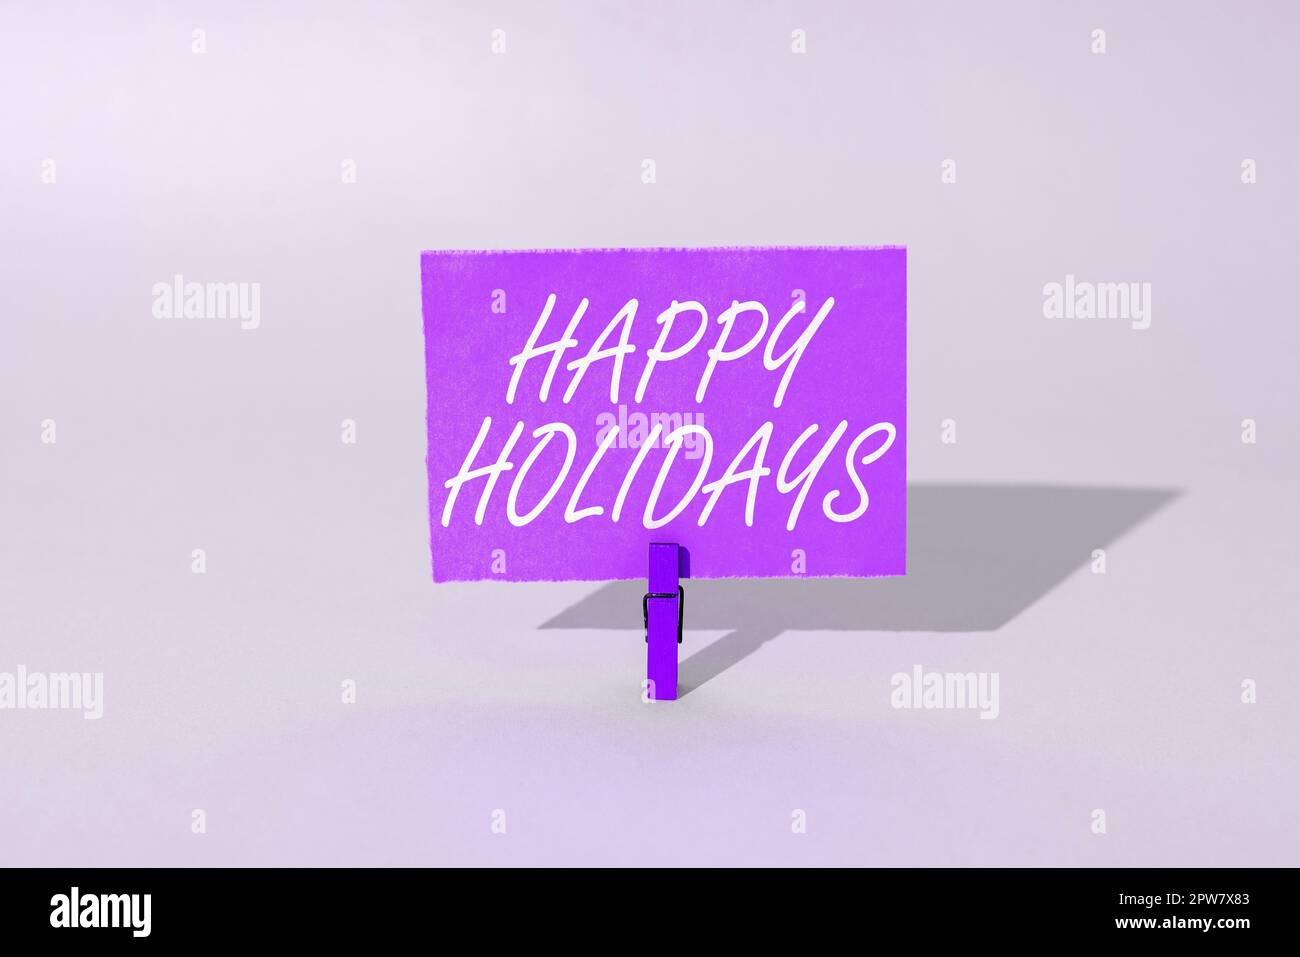 Texte montrant l'inspiration Happy Holidays, salutation de concept d'Internet utilisé pour reconnaître la célébration de nombreuses vacances Banque D'Images